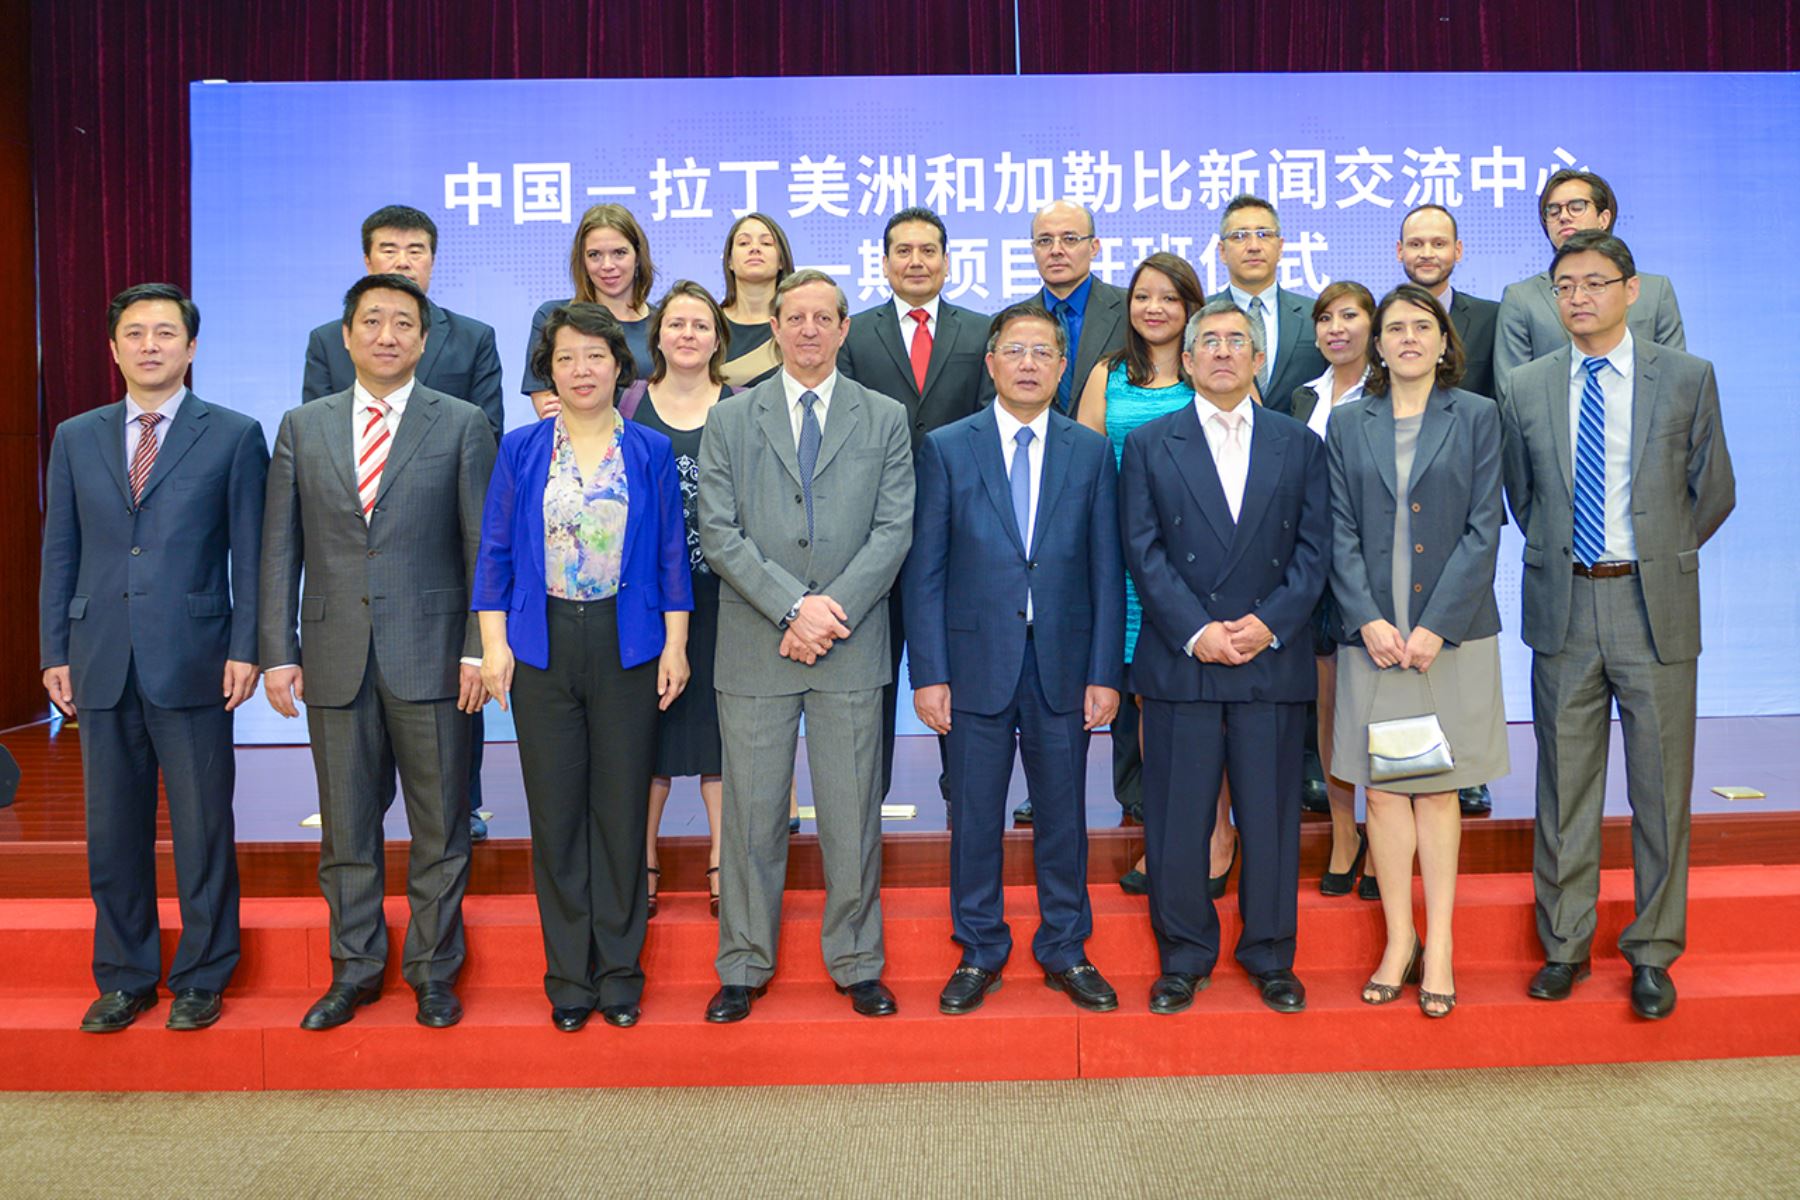 Vicepresidente de la Asociación de Diplomacia Pública de China, Hu Zhengyue, con embajadores y los once periodistas participantes del primer curso del Centro de Intercambio de Prensa China-América Latina y el Caribe (Clacpc 2017)